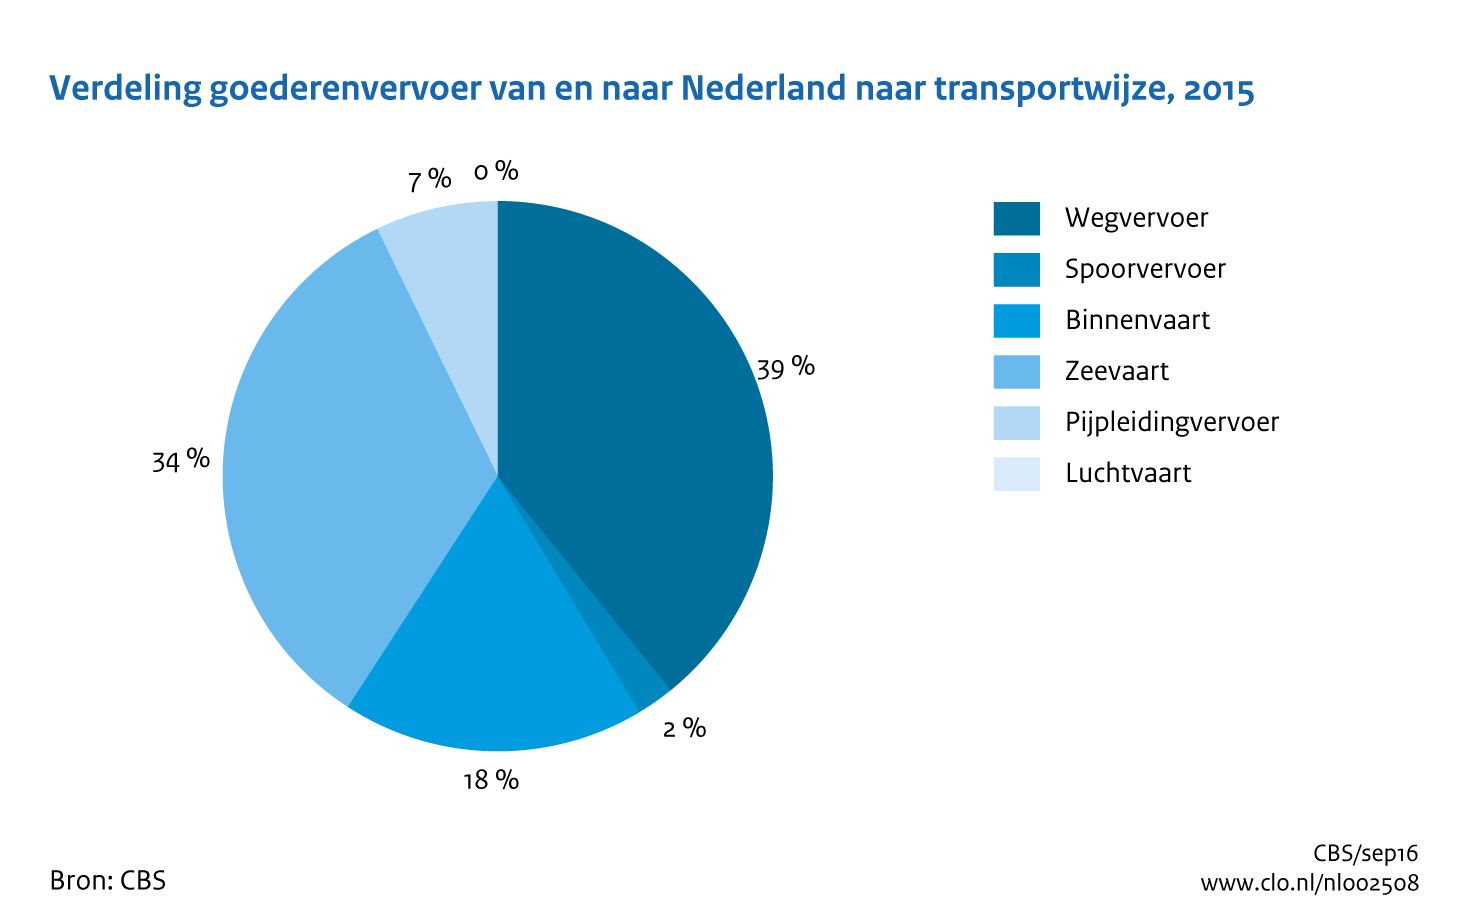 Figuur Verdeling goederenvervoer van en naar Nederland naar modaliteit. In de rest van de tekst wordt deze figuur uitgebreider uitgelegd.